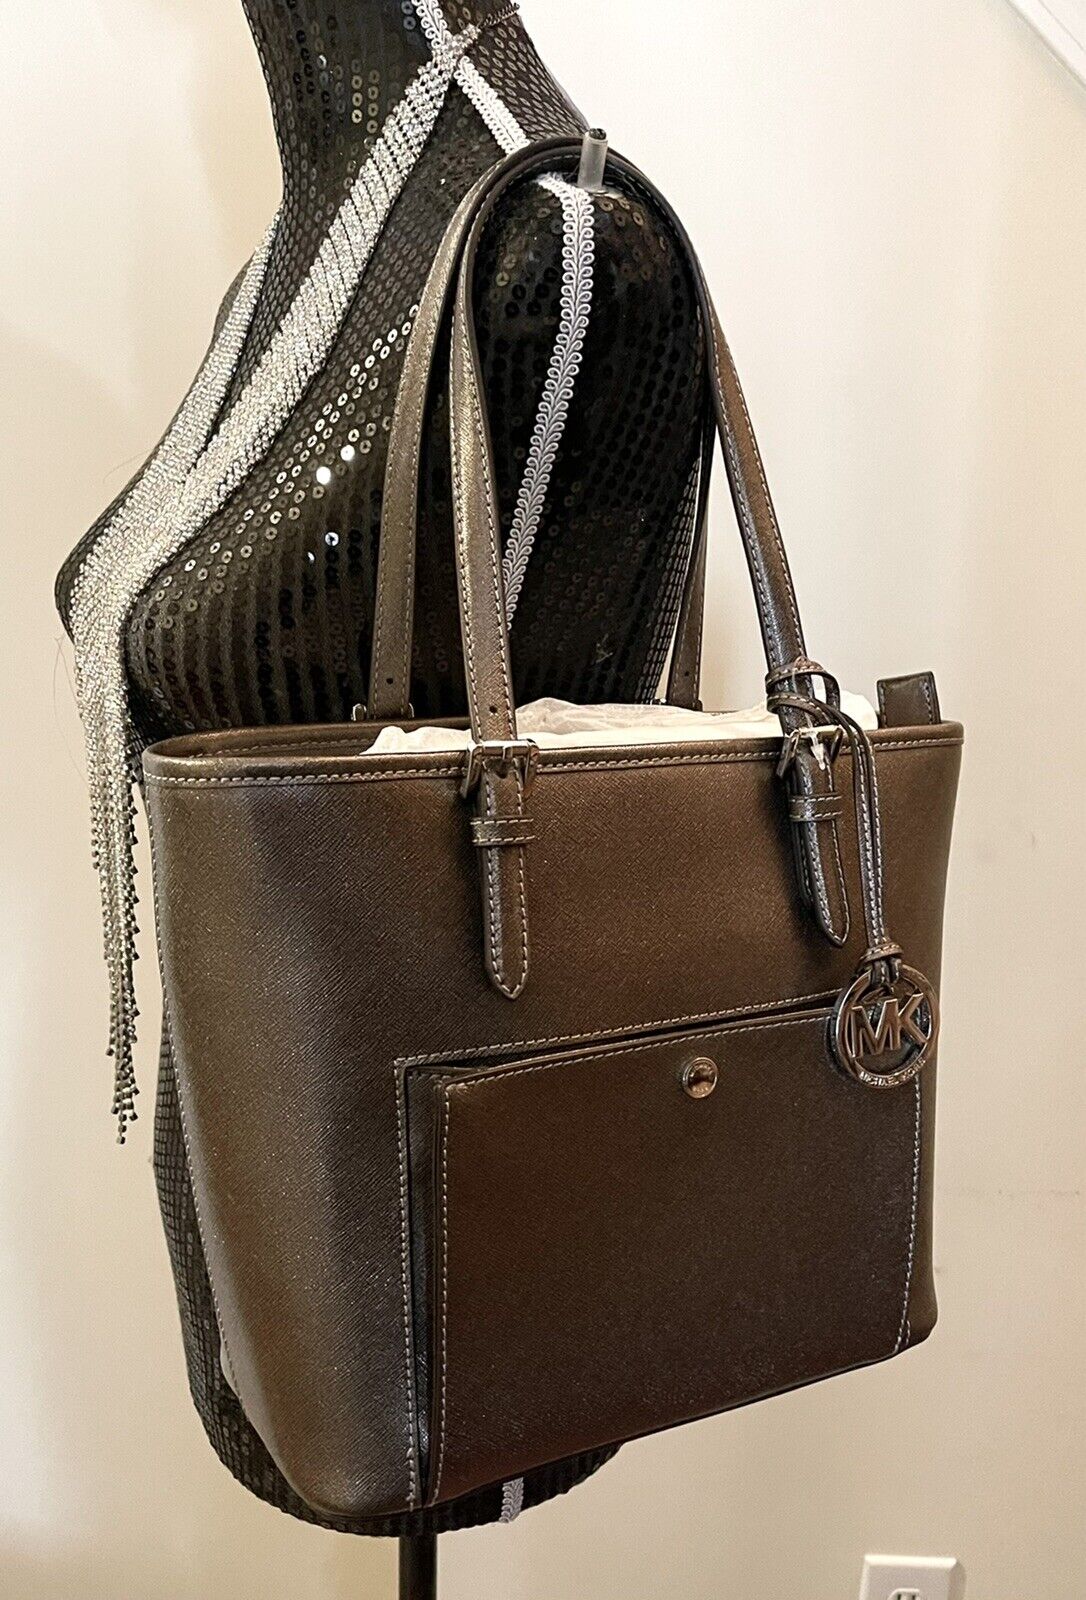 Michael Kors Jet Set Item Med Snap Pocket shoulder Tote handbag Metallic  Cinder | eBay